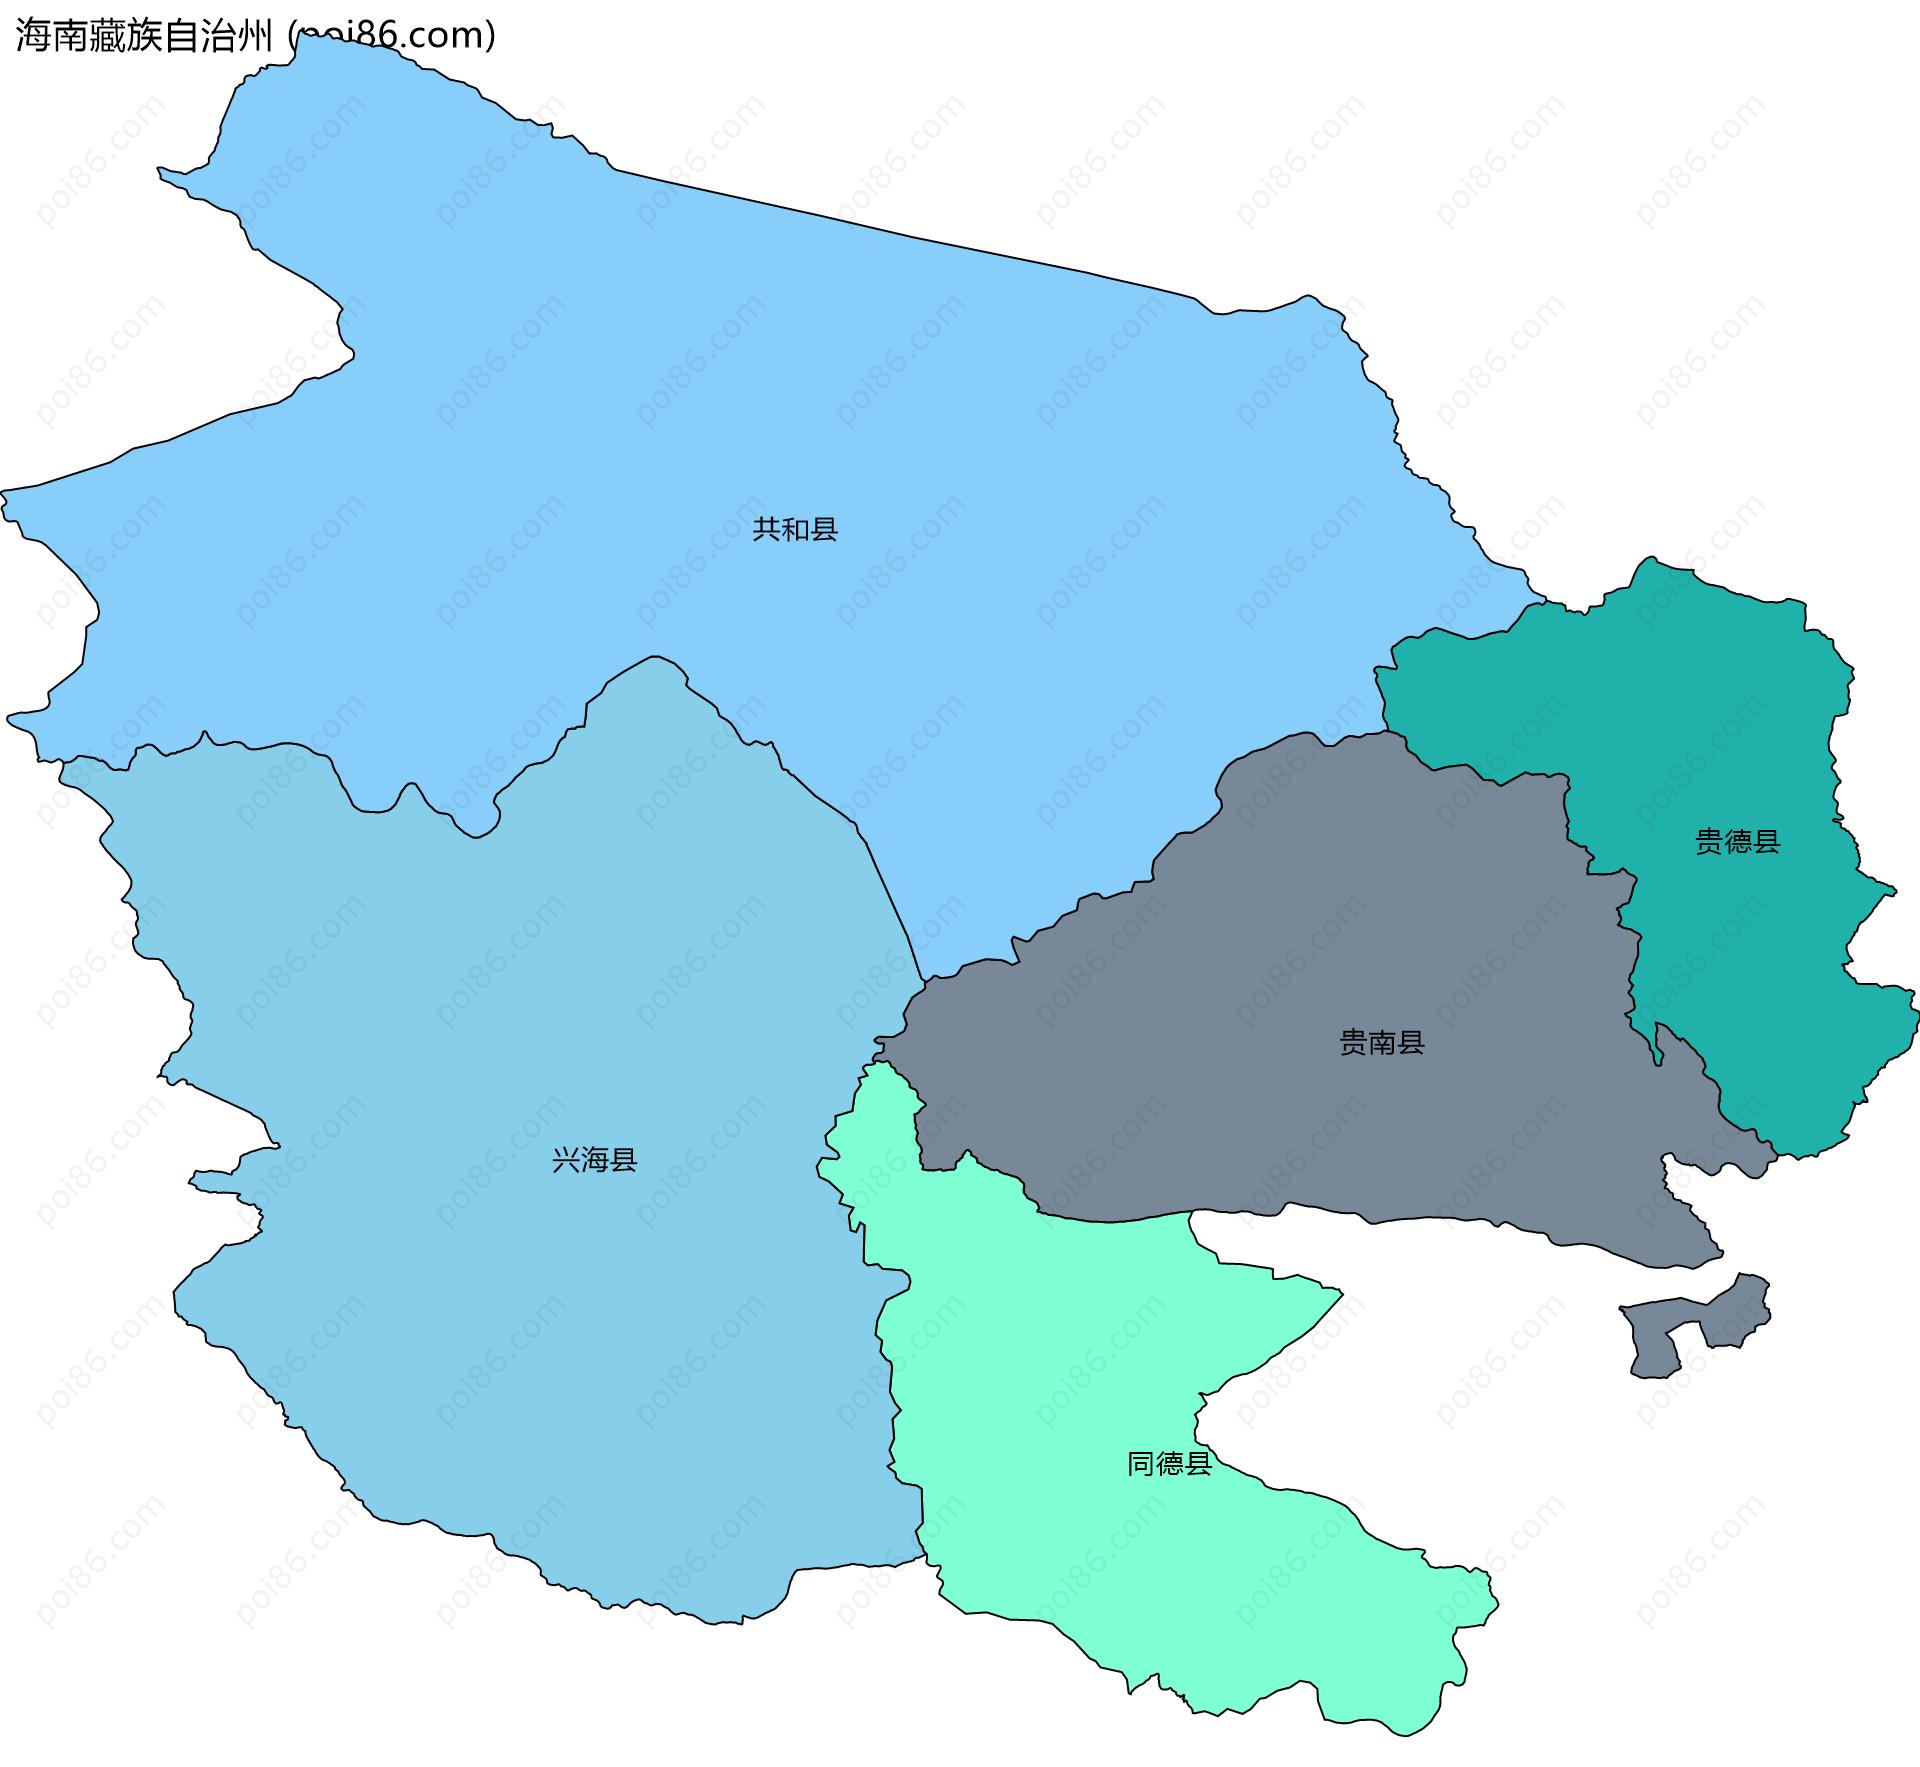 海南藏族自治州边界地图